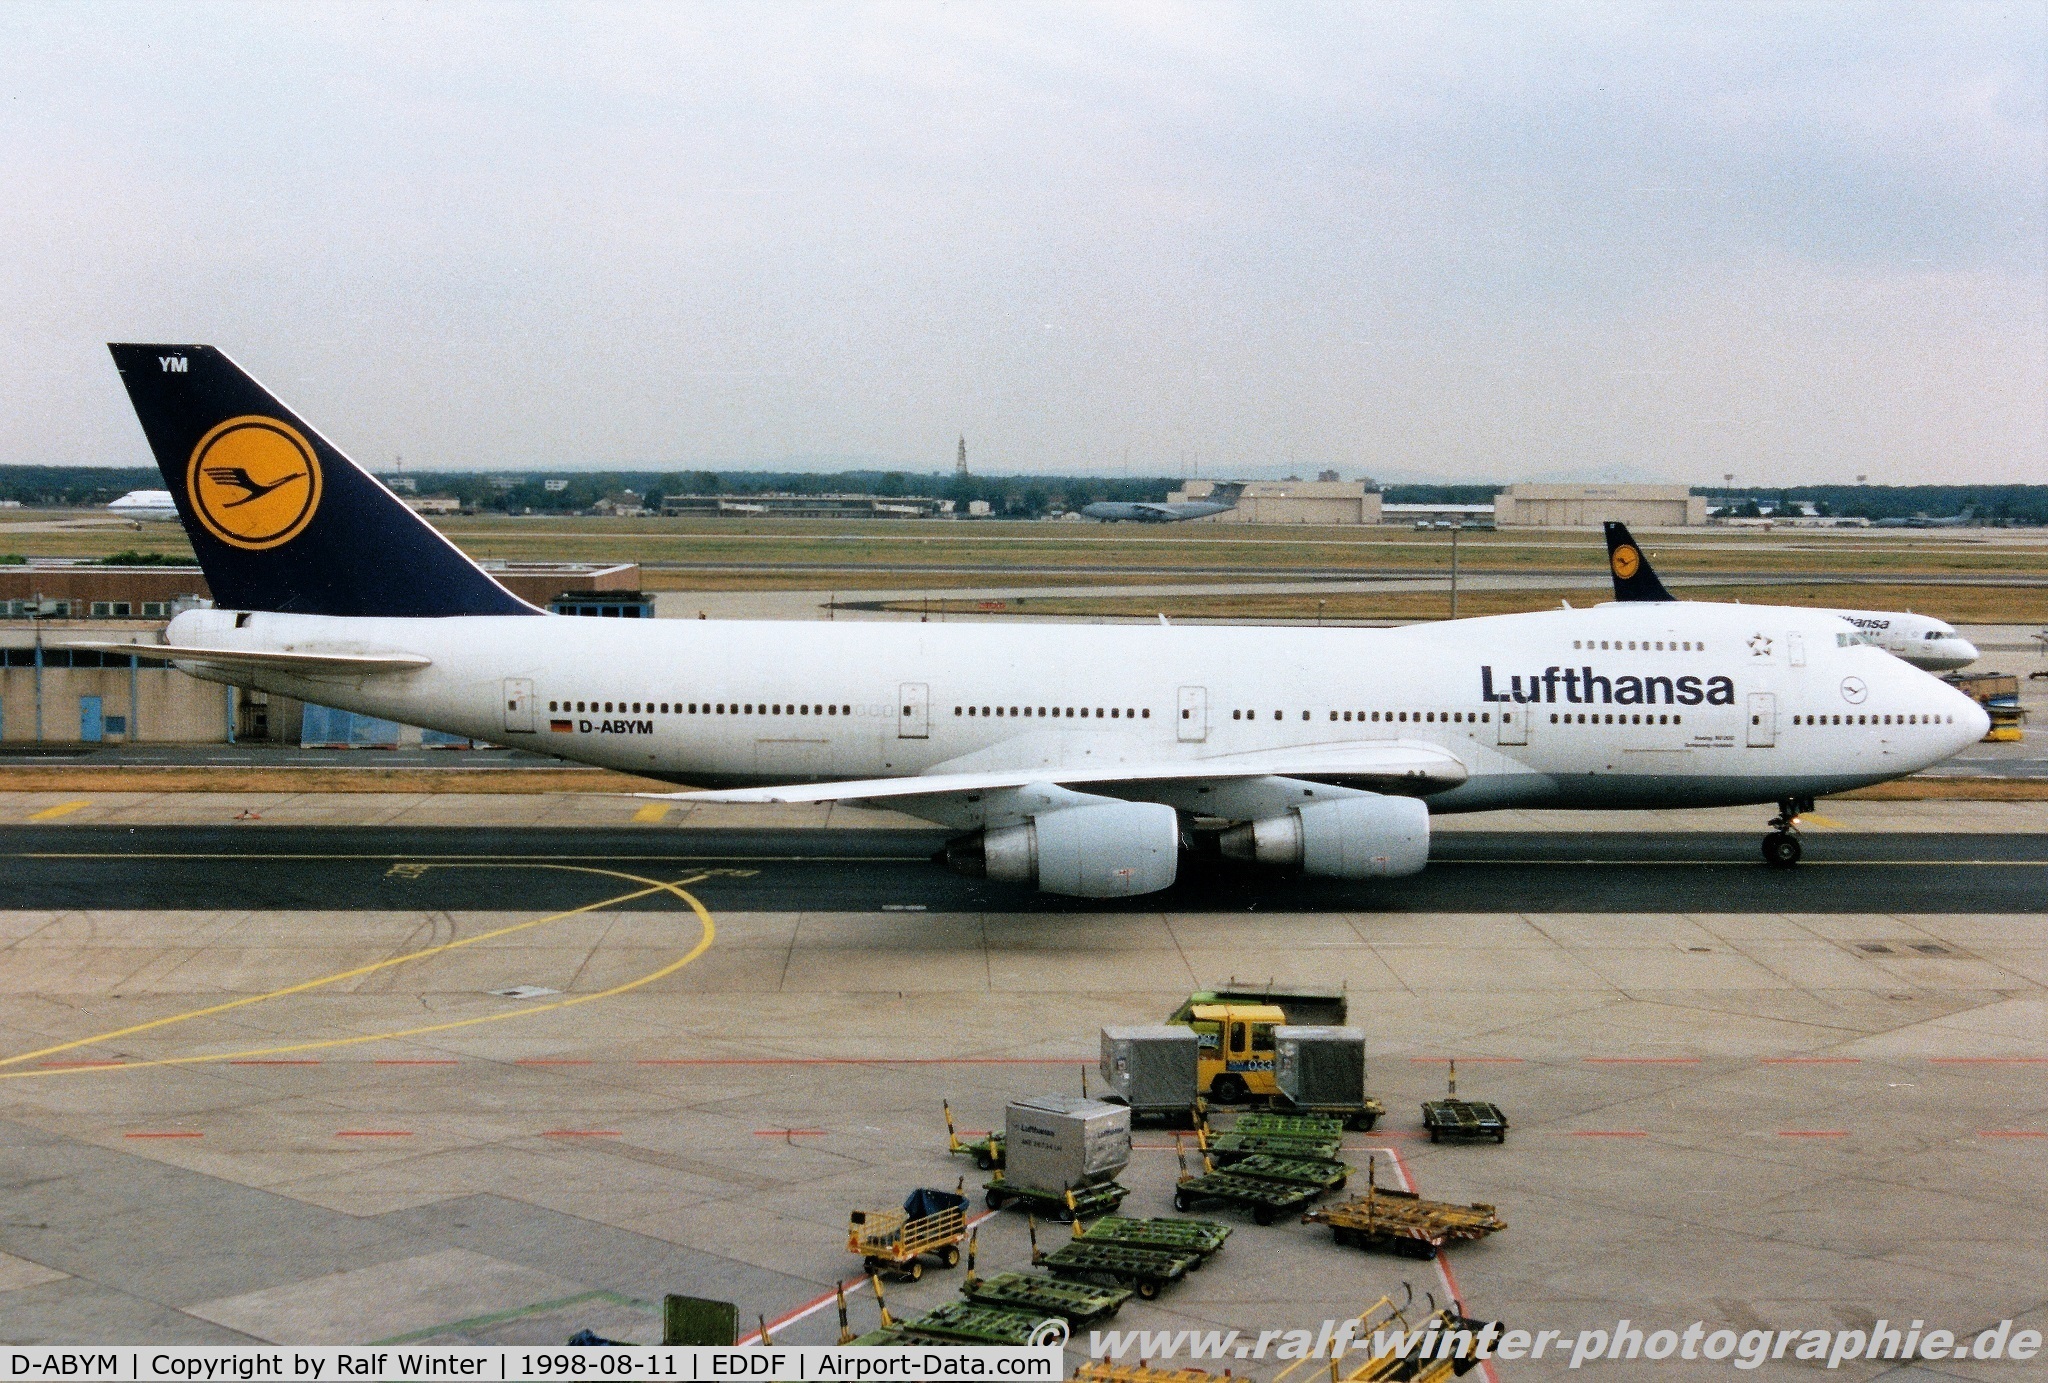 D-ABYM, 1978 Boeing 747-230BM C/N 21588, Boeing 747-230B(M) - LH DLH Lufthansa 'Schleswig-Holstein' - 21588 - D-ABYM - 08.1998 - FRA